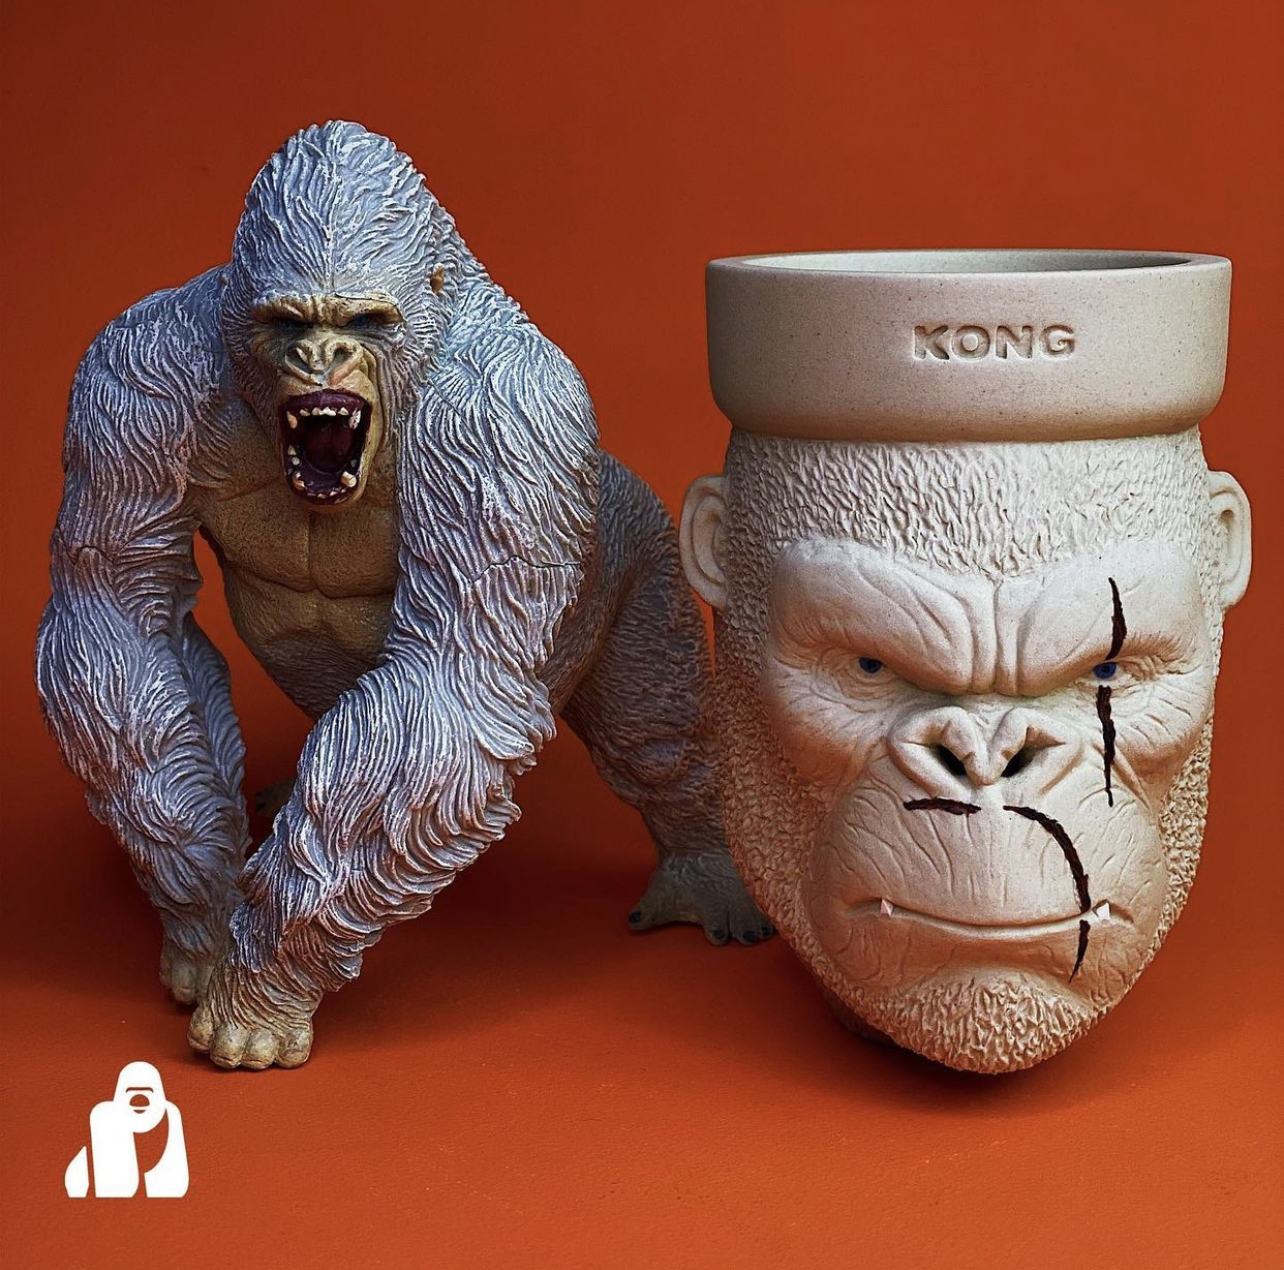 Kong King Kong Blow-Off Bowl